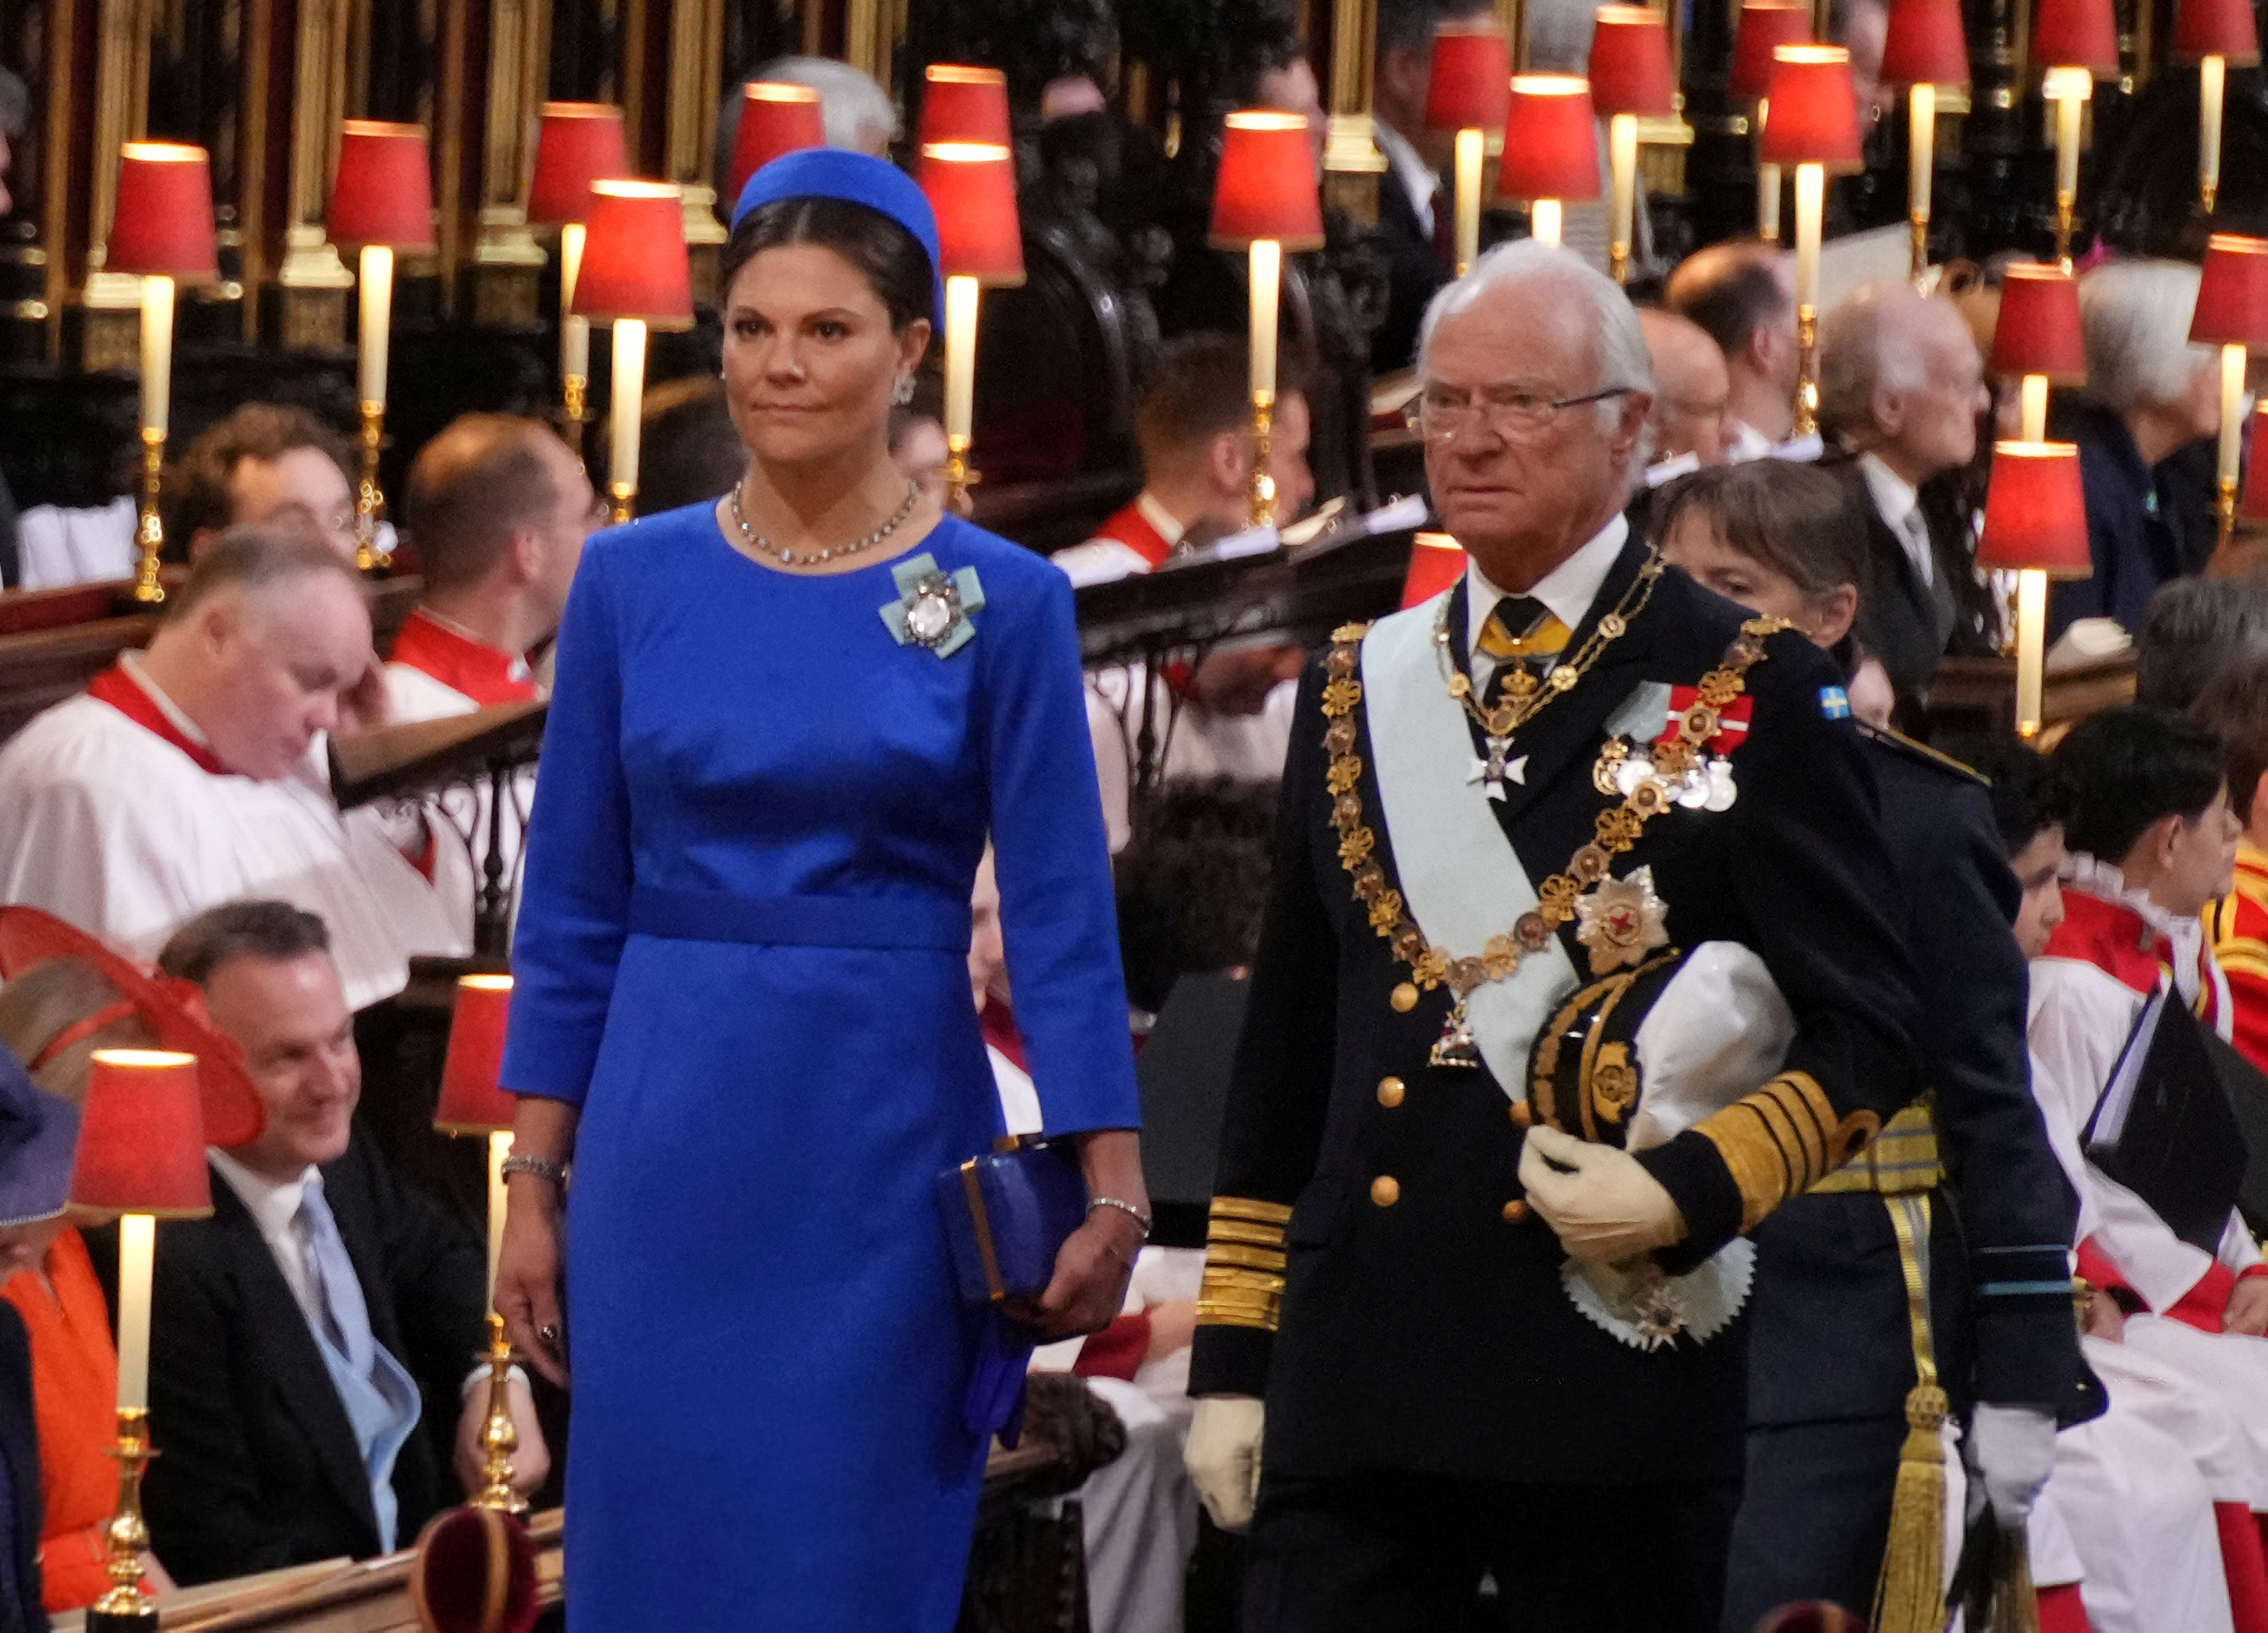 La princesa Victoria de Suecia y Carlos XVI Gustaf, rey de Suecia caminan dentro de la abadía. (Victoria Jones/Pool via REUTERS)